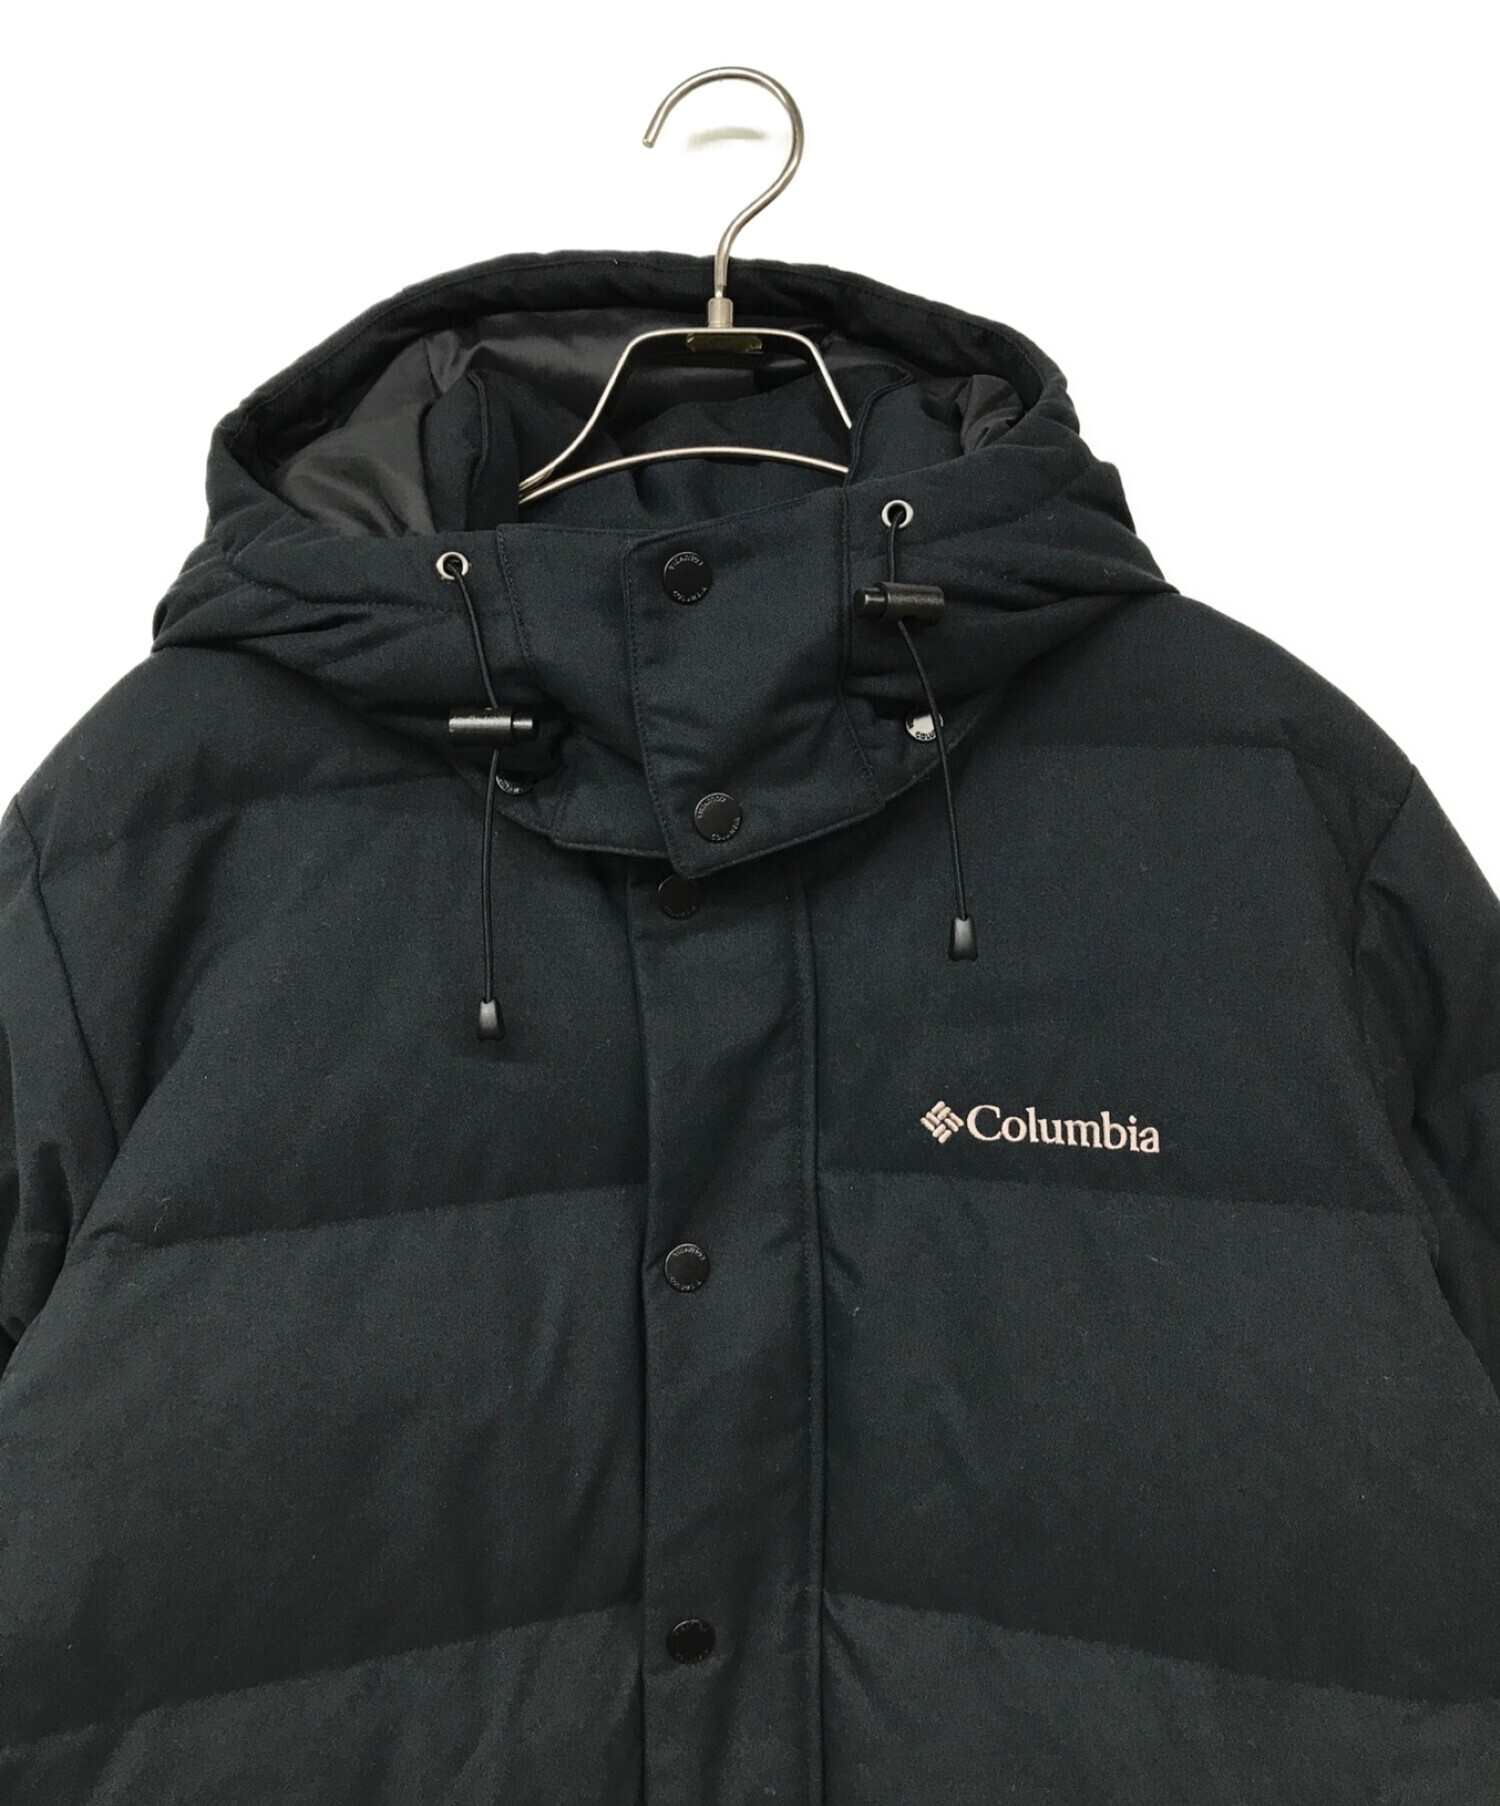 Columbia (コロンビア) ダウンジャケット ブラック サイズ:L